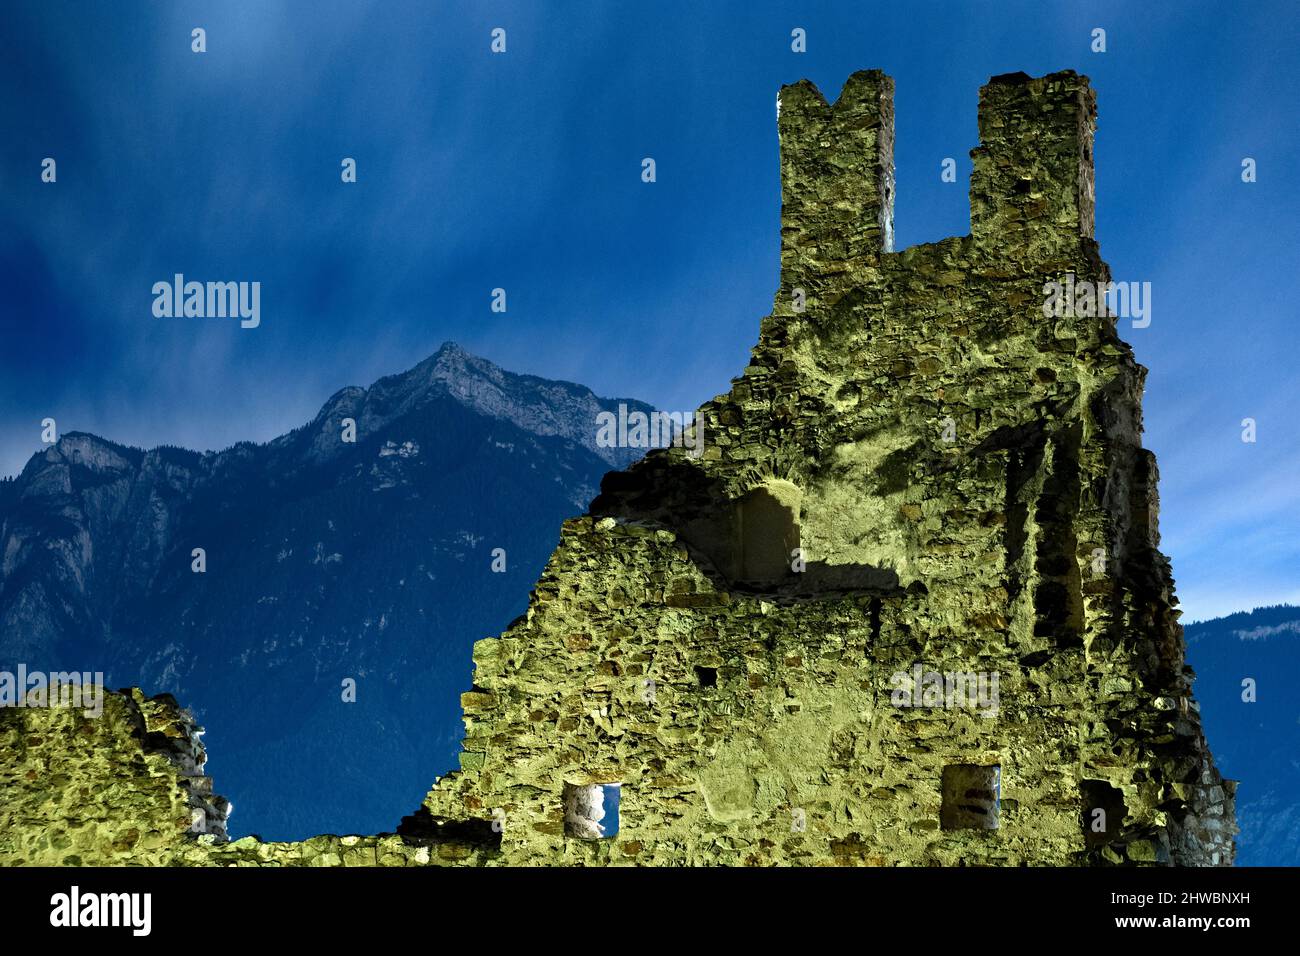 Les ruines effrayantes du château de Selva et du mont Cima Vezzena en hiver. Levico terme, province de Trento, Trentin-Haut-Adige, Italie, Europe. Banque D'Images